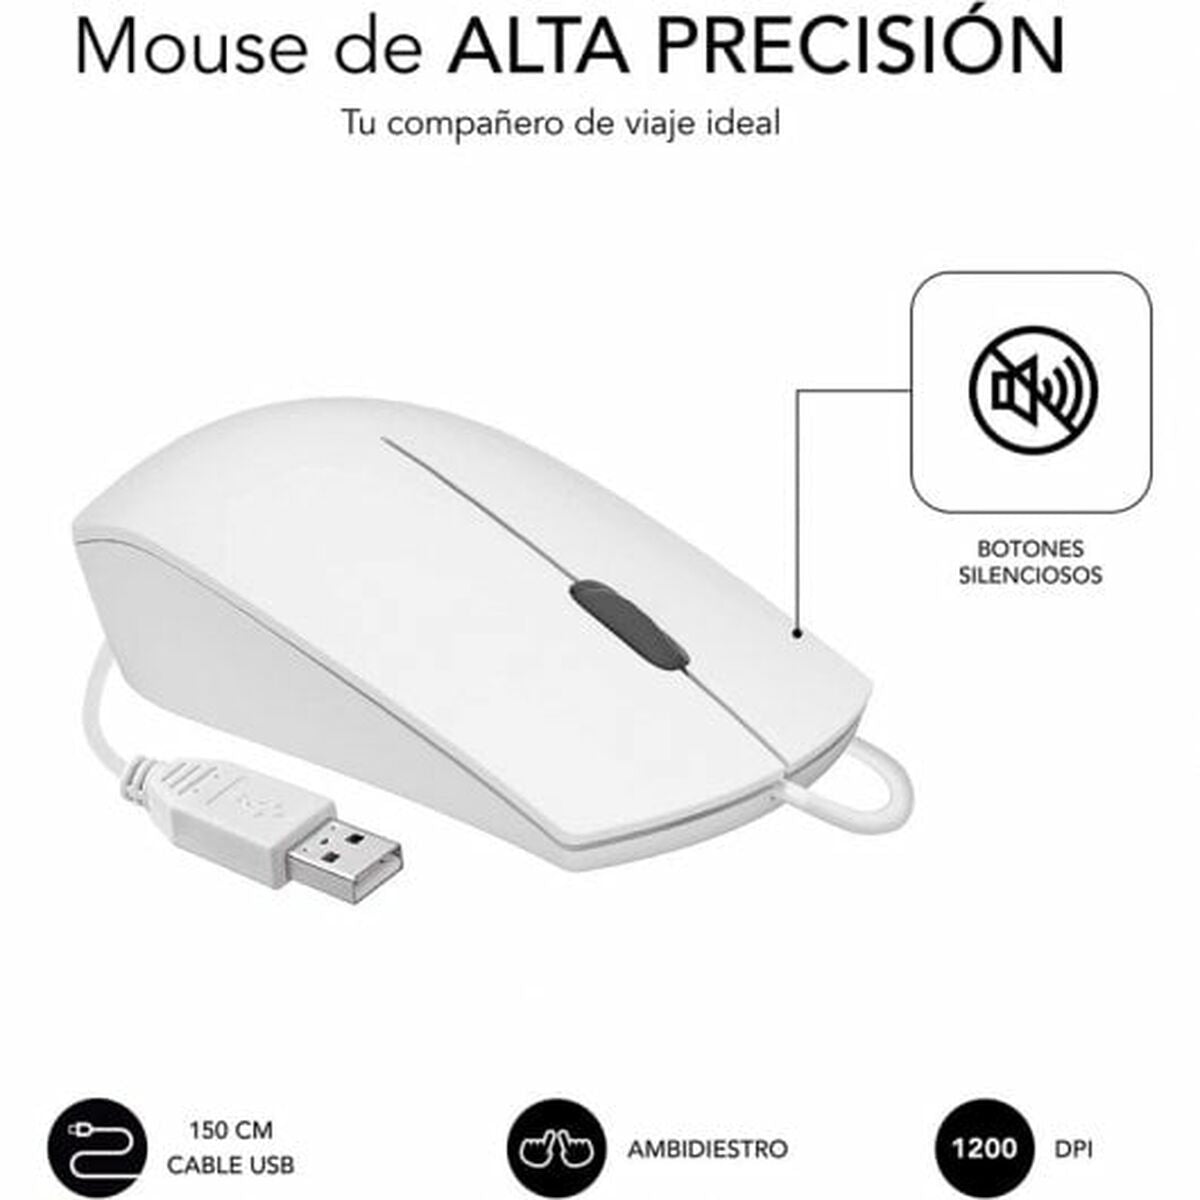 Tastatur mit Maus Subblim SUBKBC-CSSK02 Weiß Qwerty Spanisch QWERTY - CA International 